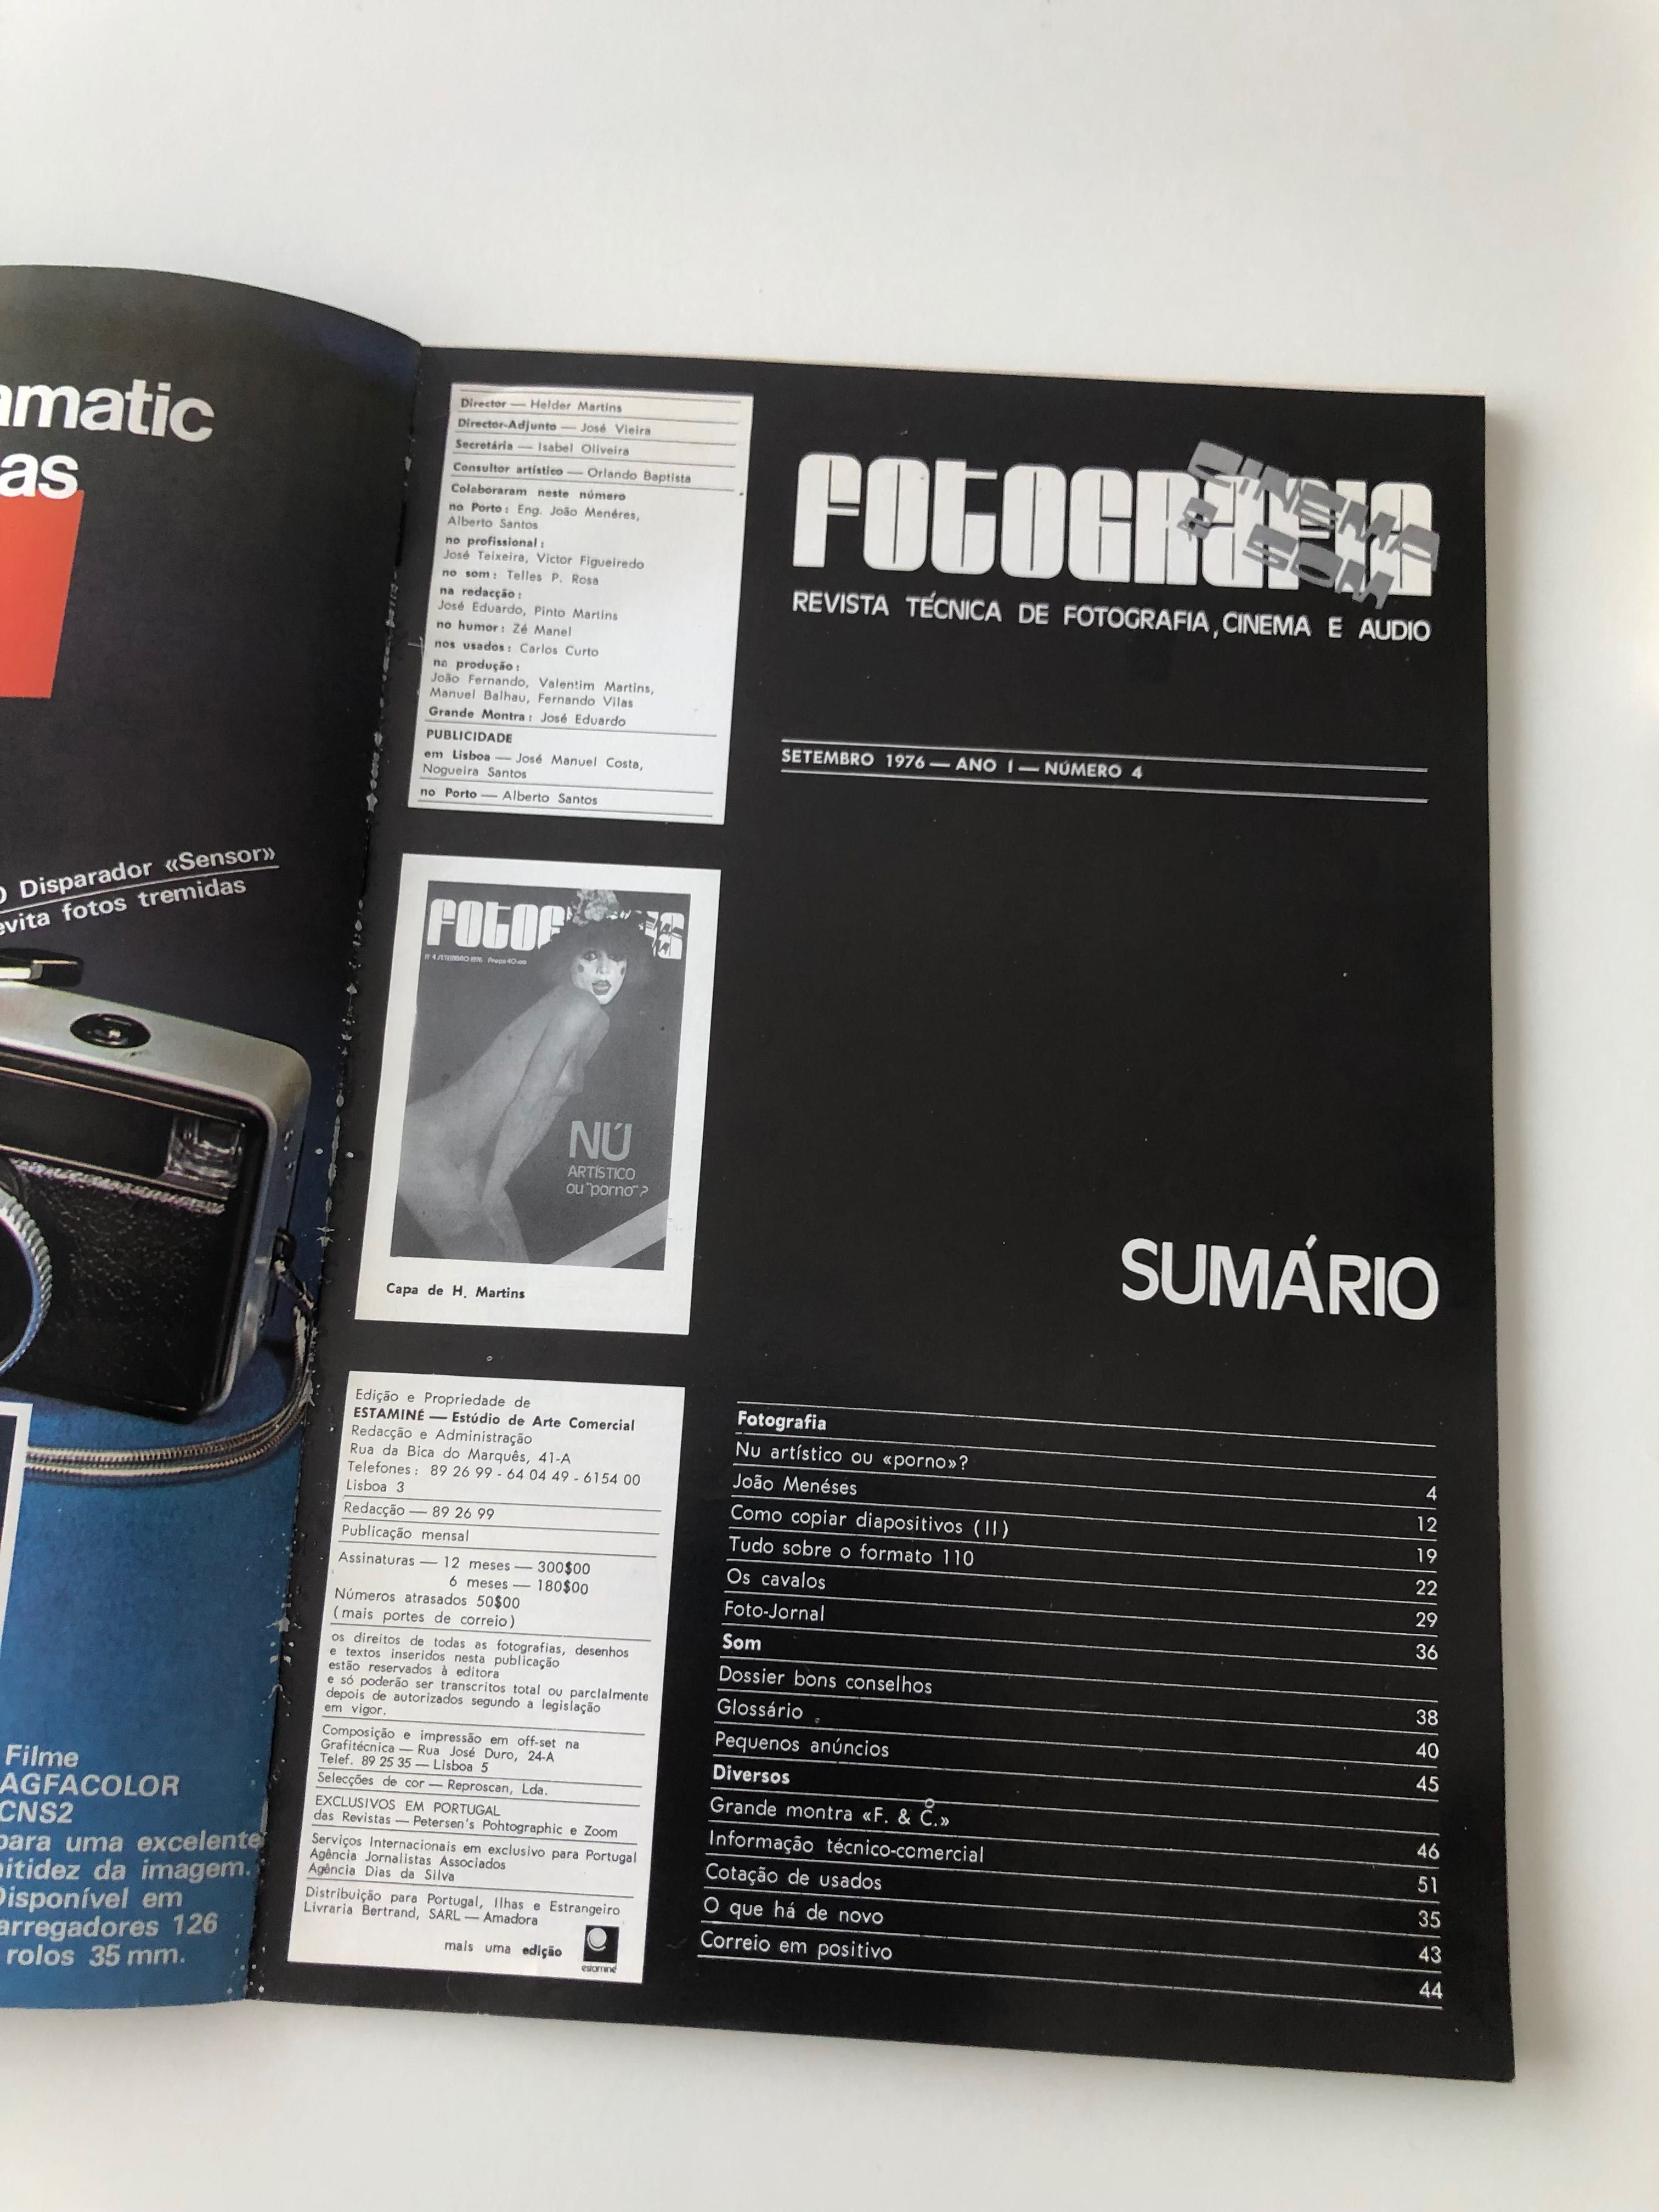 Revista técnica fotografia cinema e áudio 1976